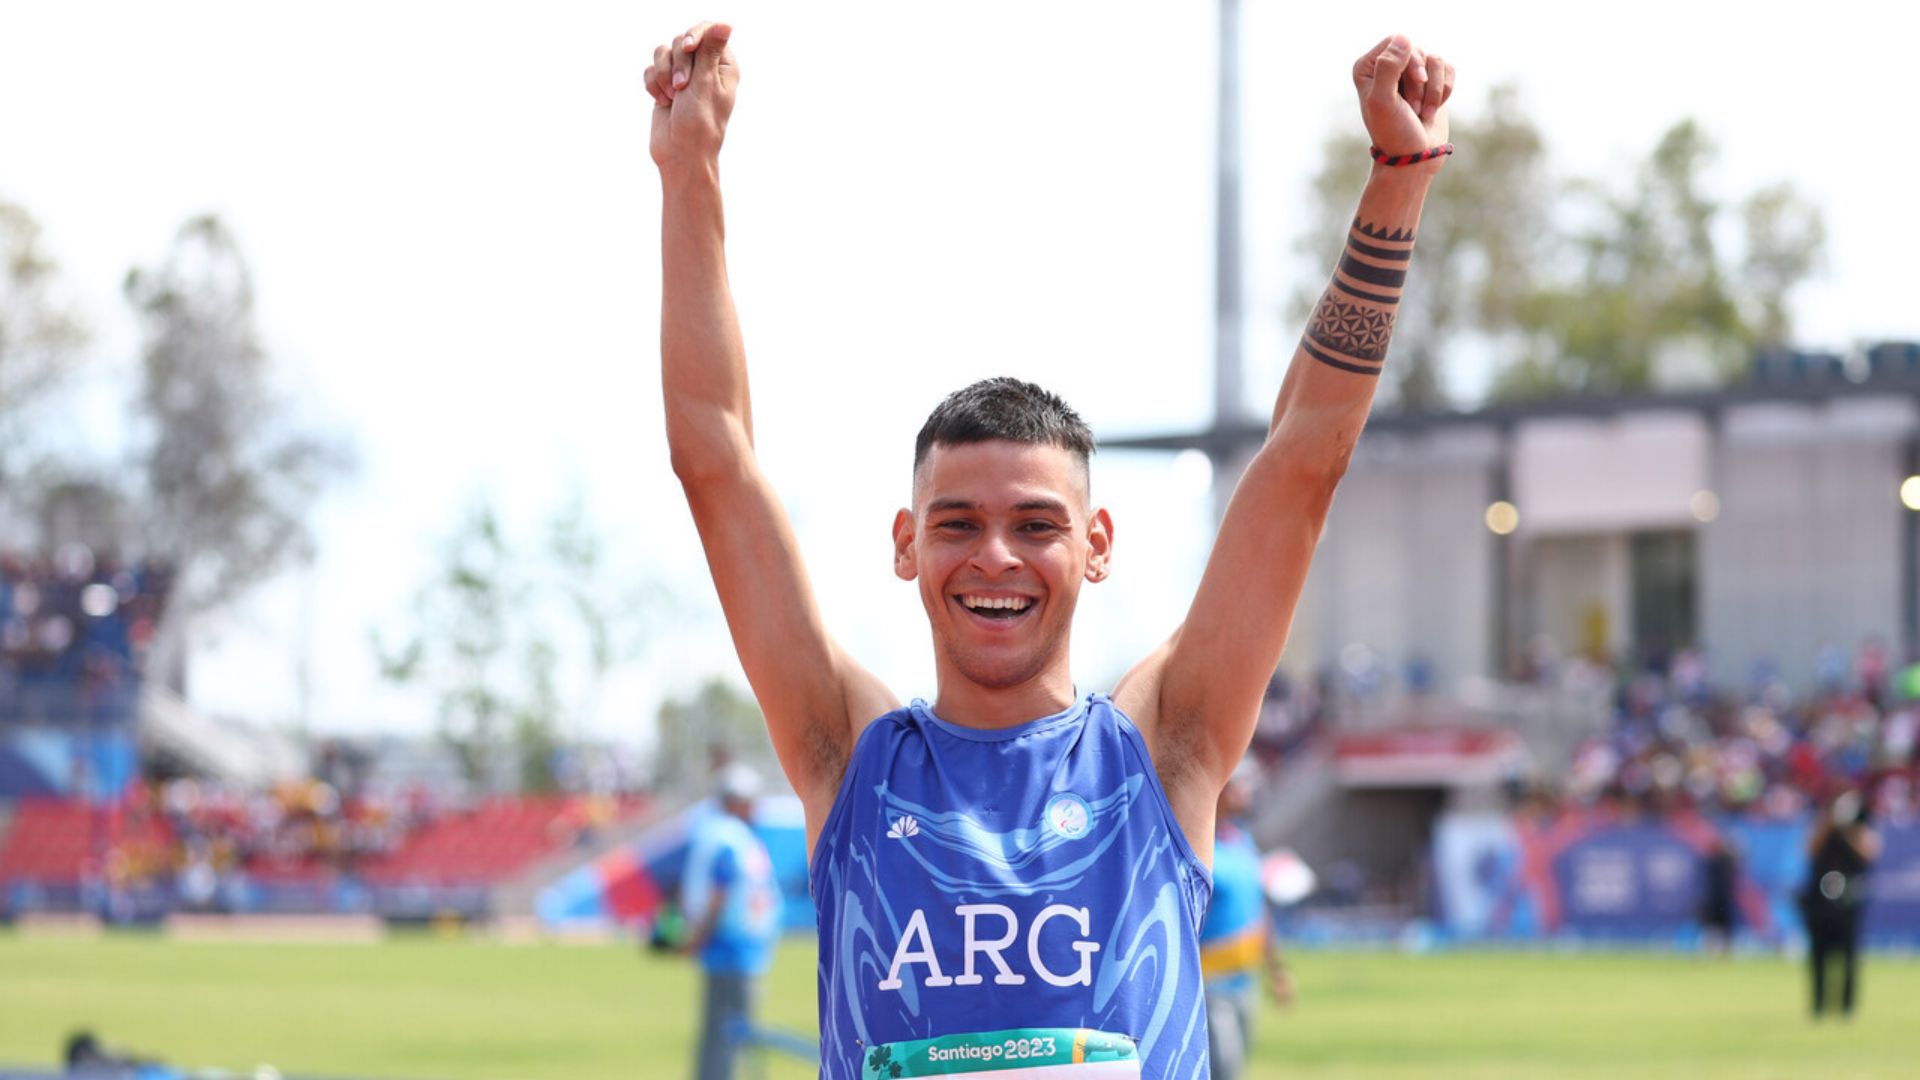 Para atletismo: Argentina y Colombia se hacen fuertes en los 400 metros T36/37